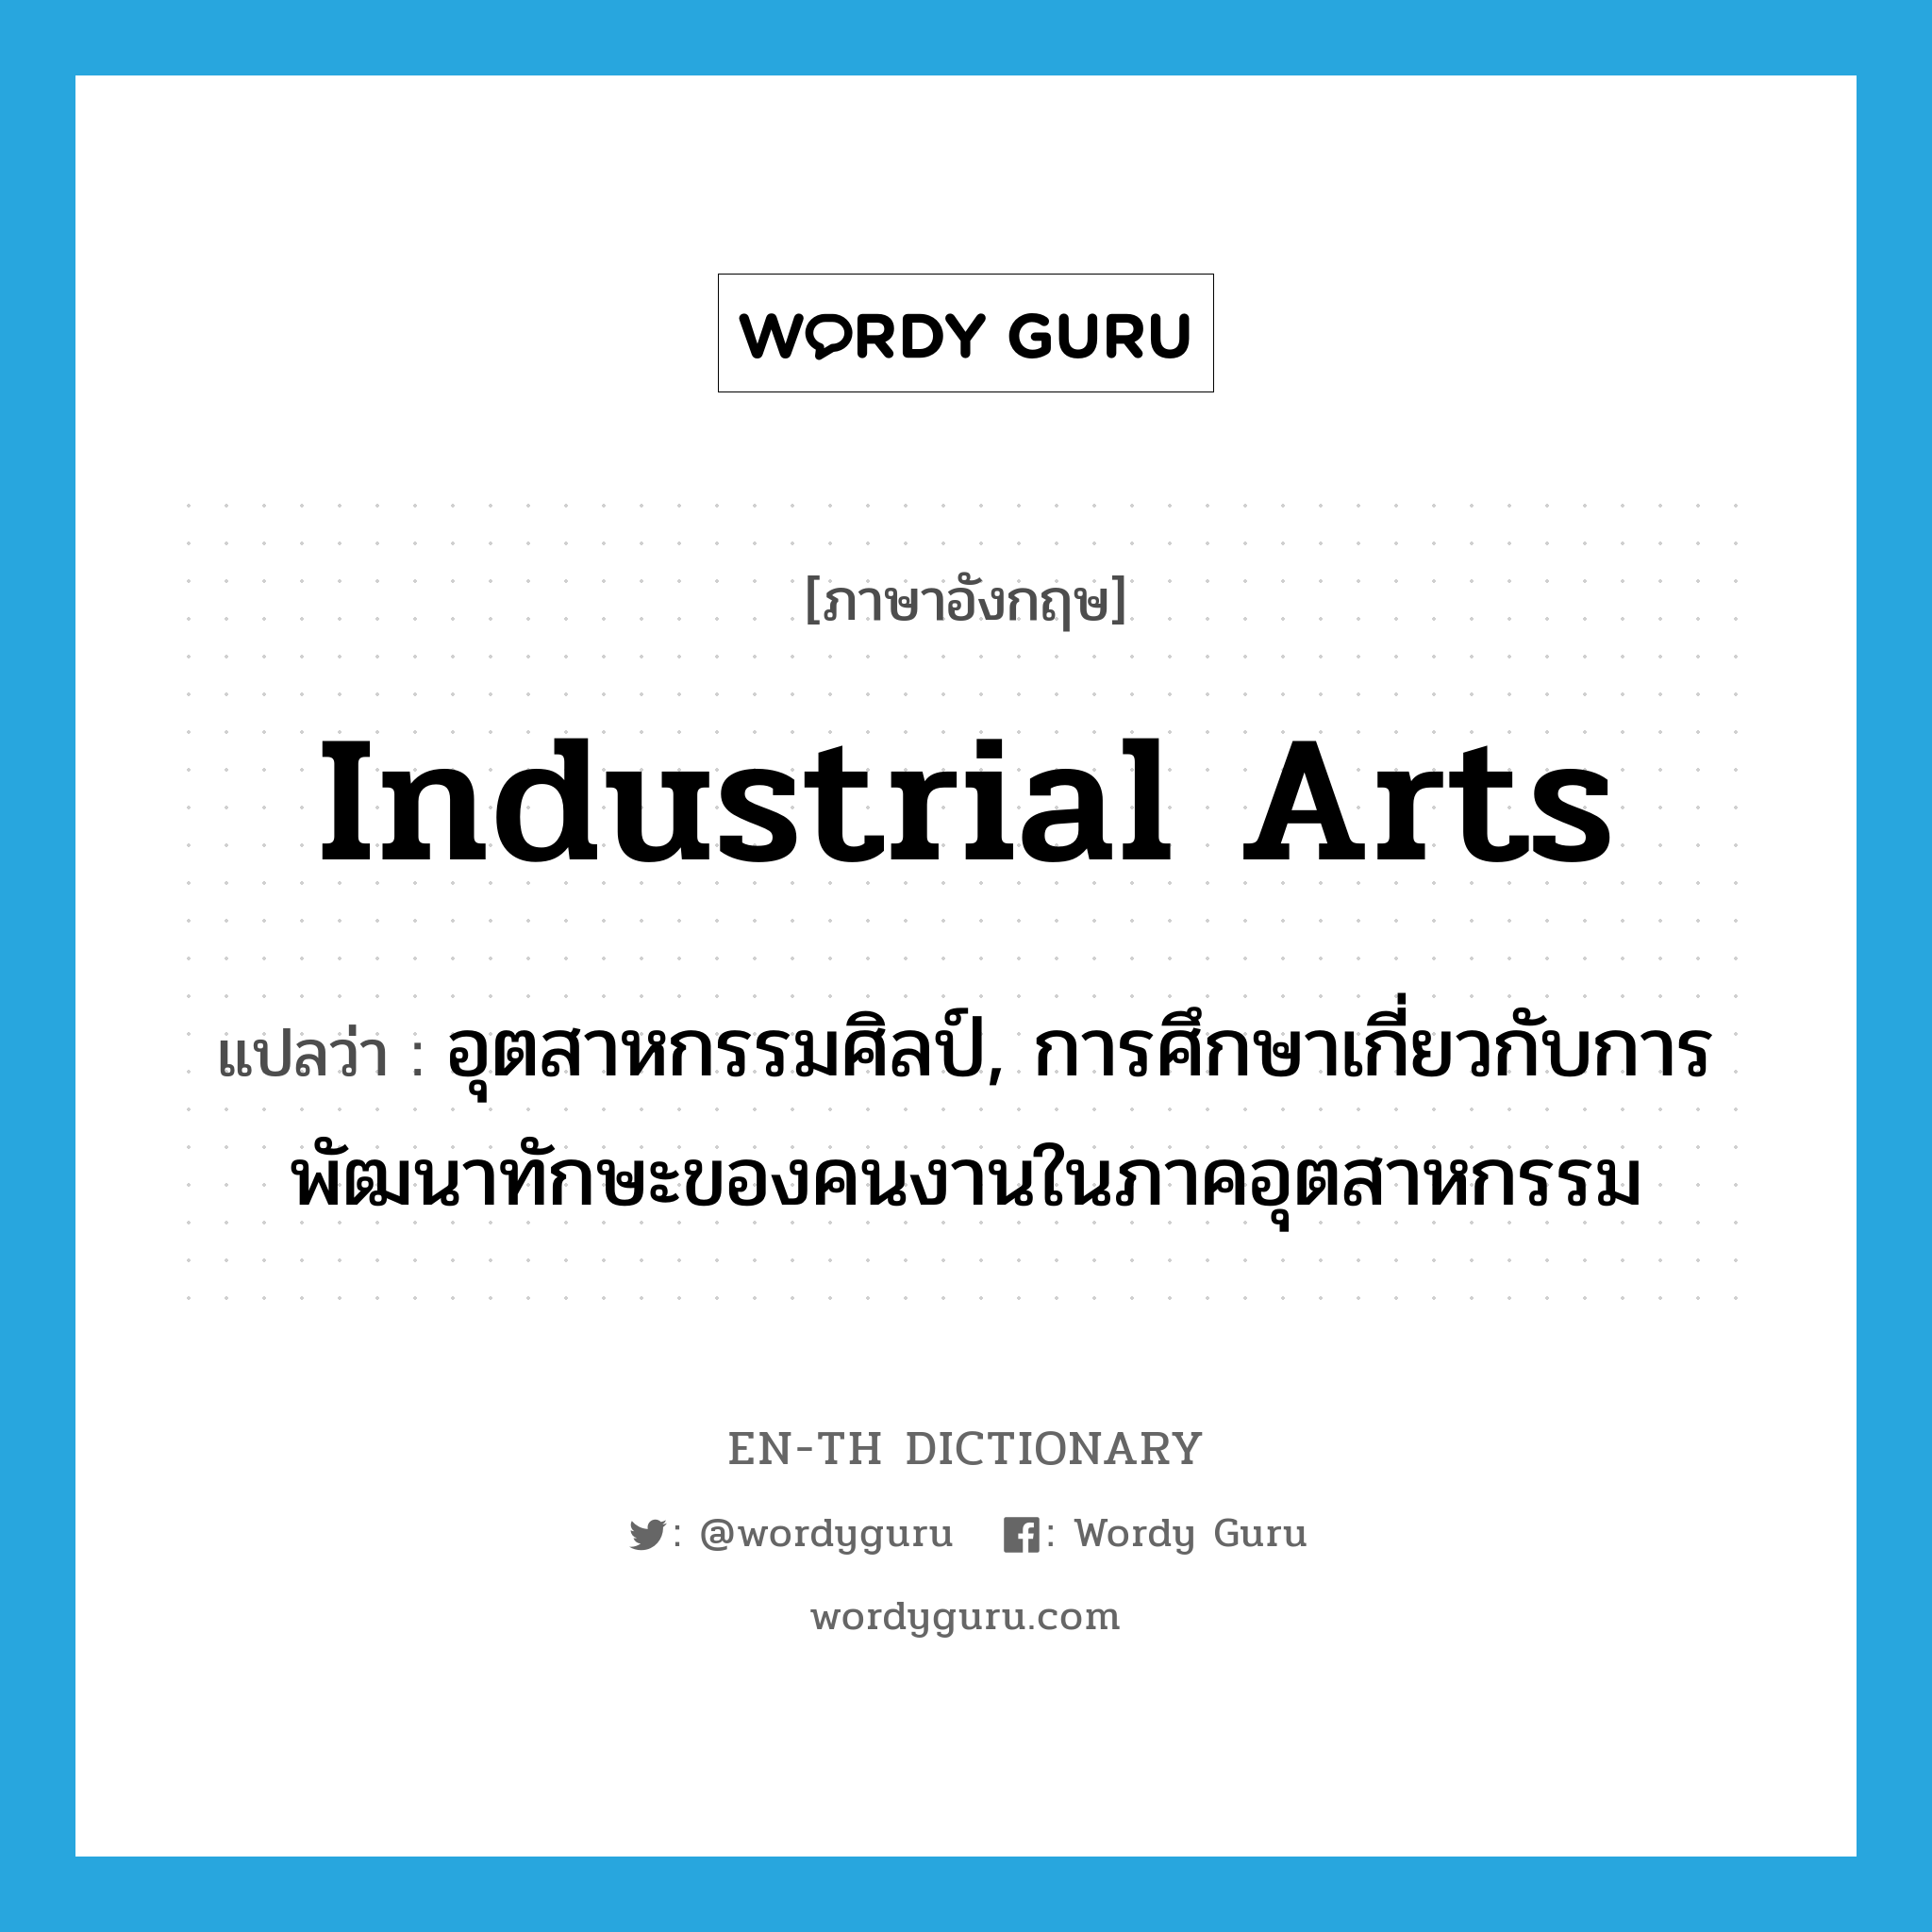 industrial arts แปลว่า?, คำศัพท์ภาษาอังกฤษ industrial arts แปลว่า อุตสาหกรรมศิลป์, การศึกษาเกี่ยวกับการพัฒนาทักษะของคนงานในภาคอุตสาหกรรม ประเภท N หมวด N